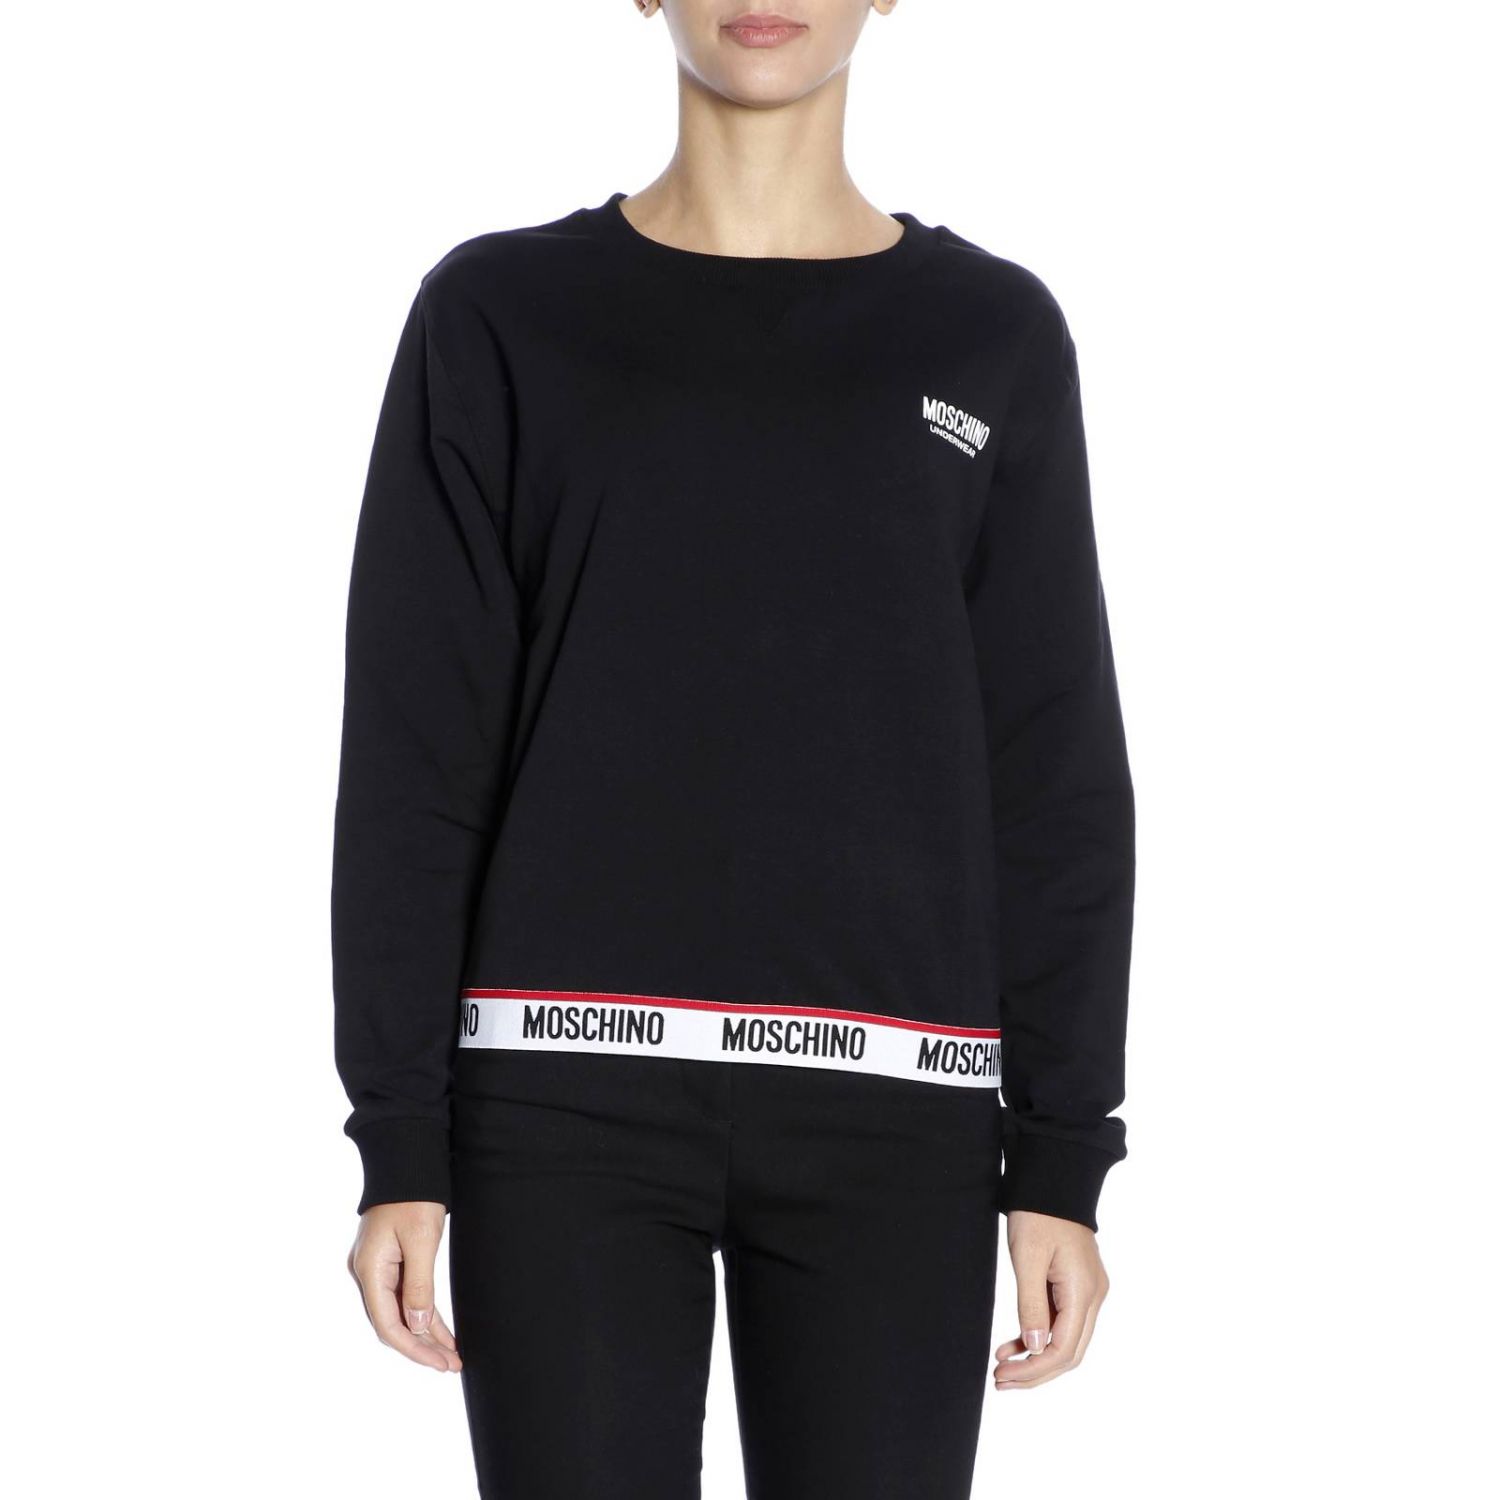 Moschino Underwear Outlet: Sweatshirt women - Black | Sweatshirt ...